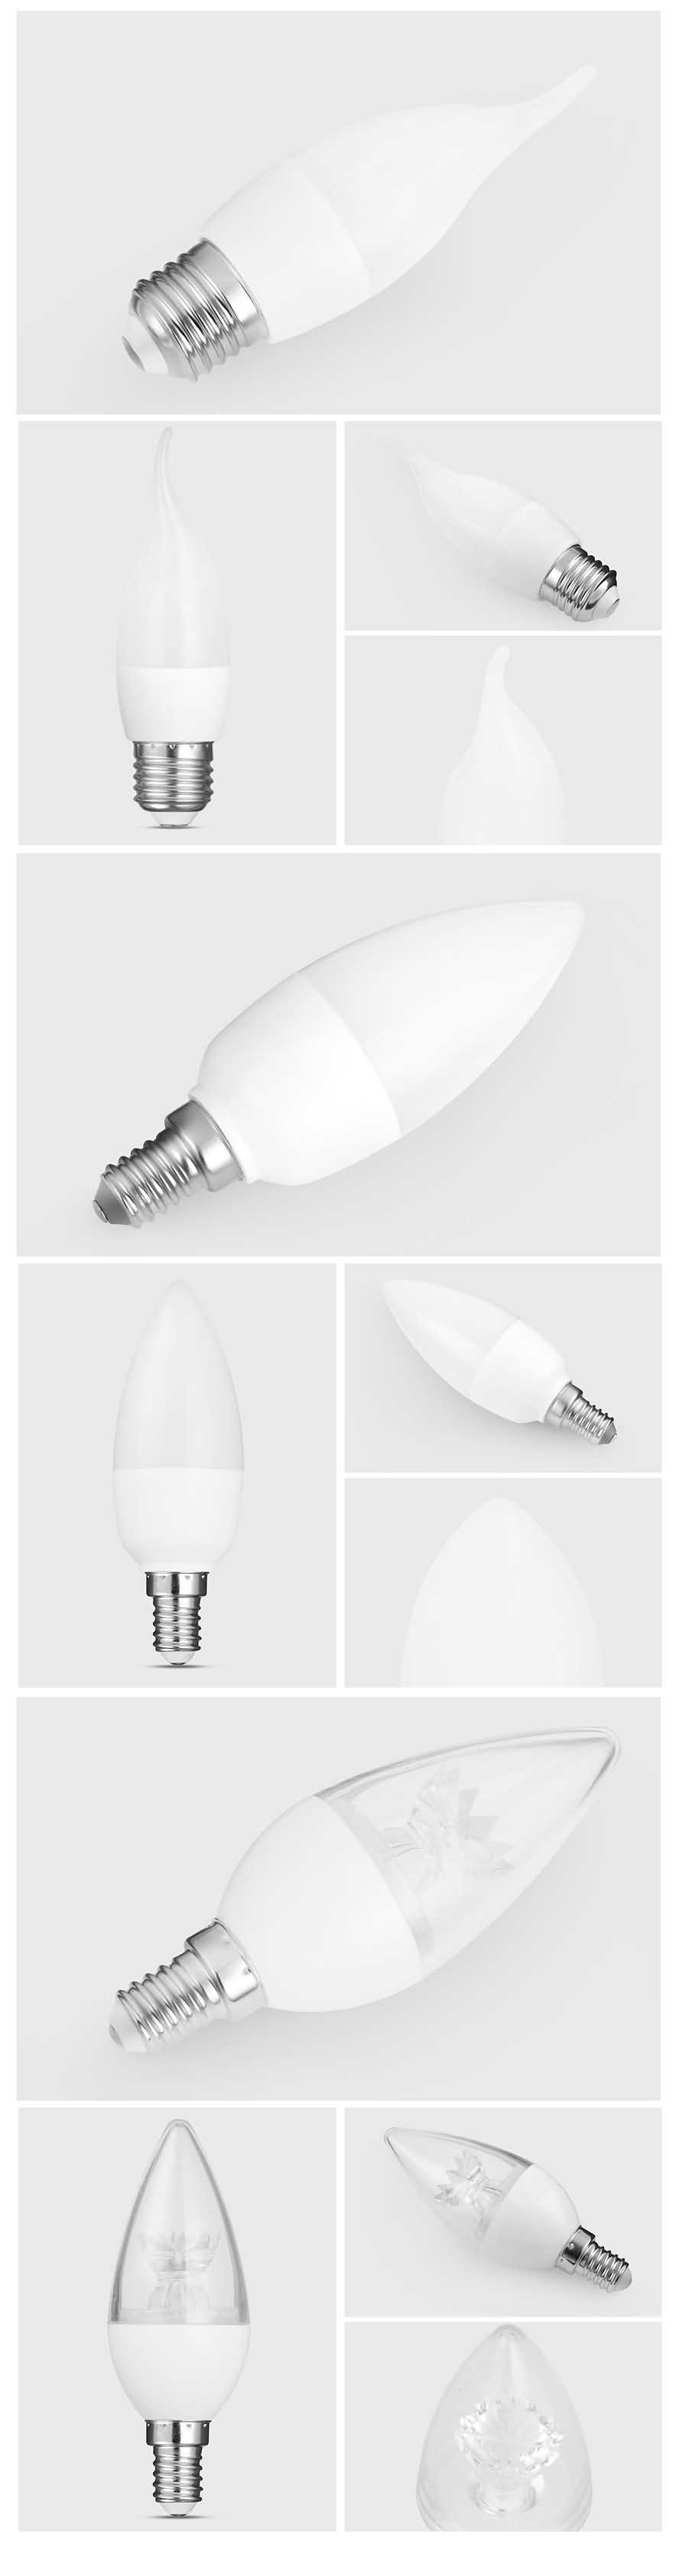 C37 LED candle bulbs